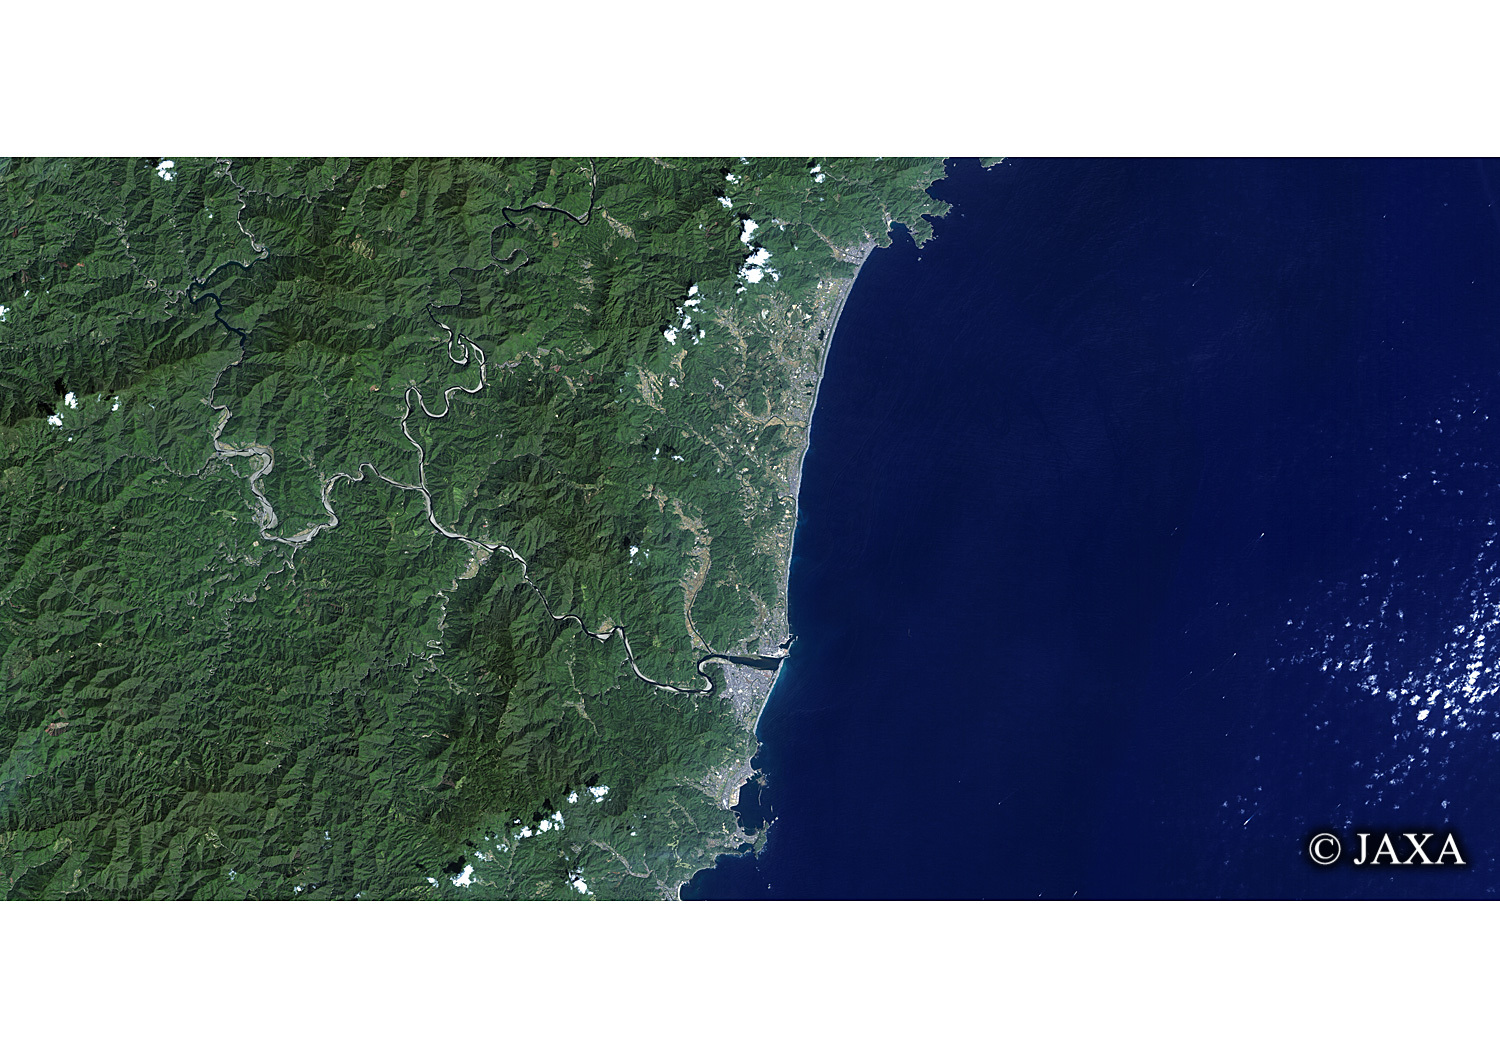 だいちから見た日本の都市 紀伊山地の霊場と参詣道:衛星画像